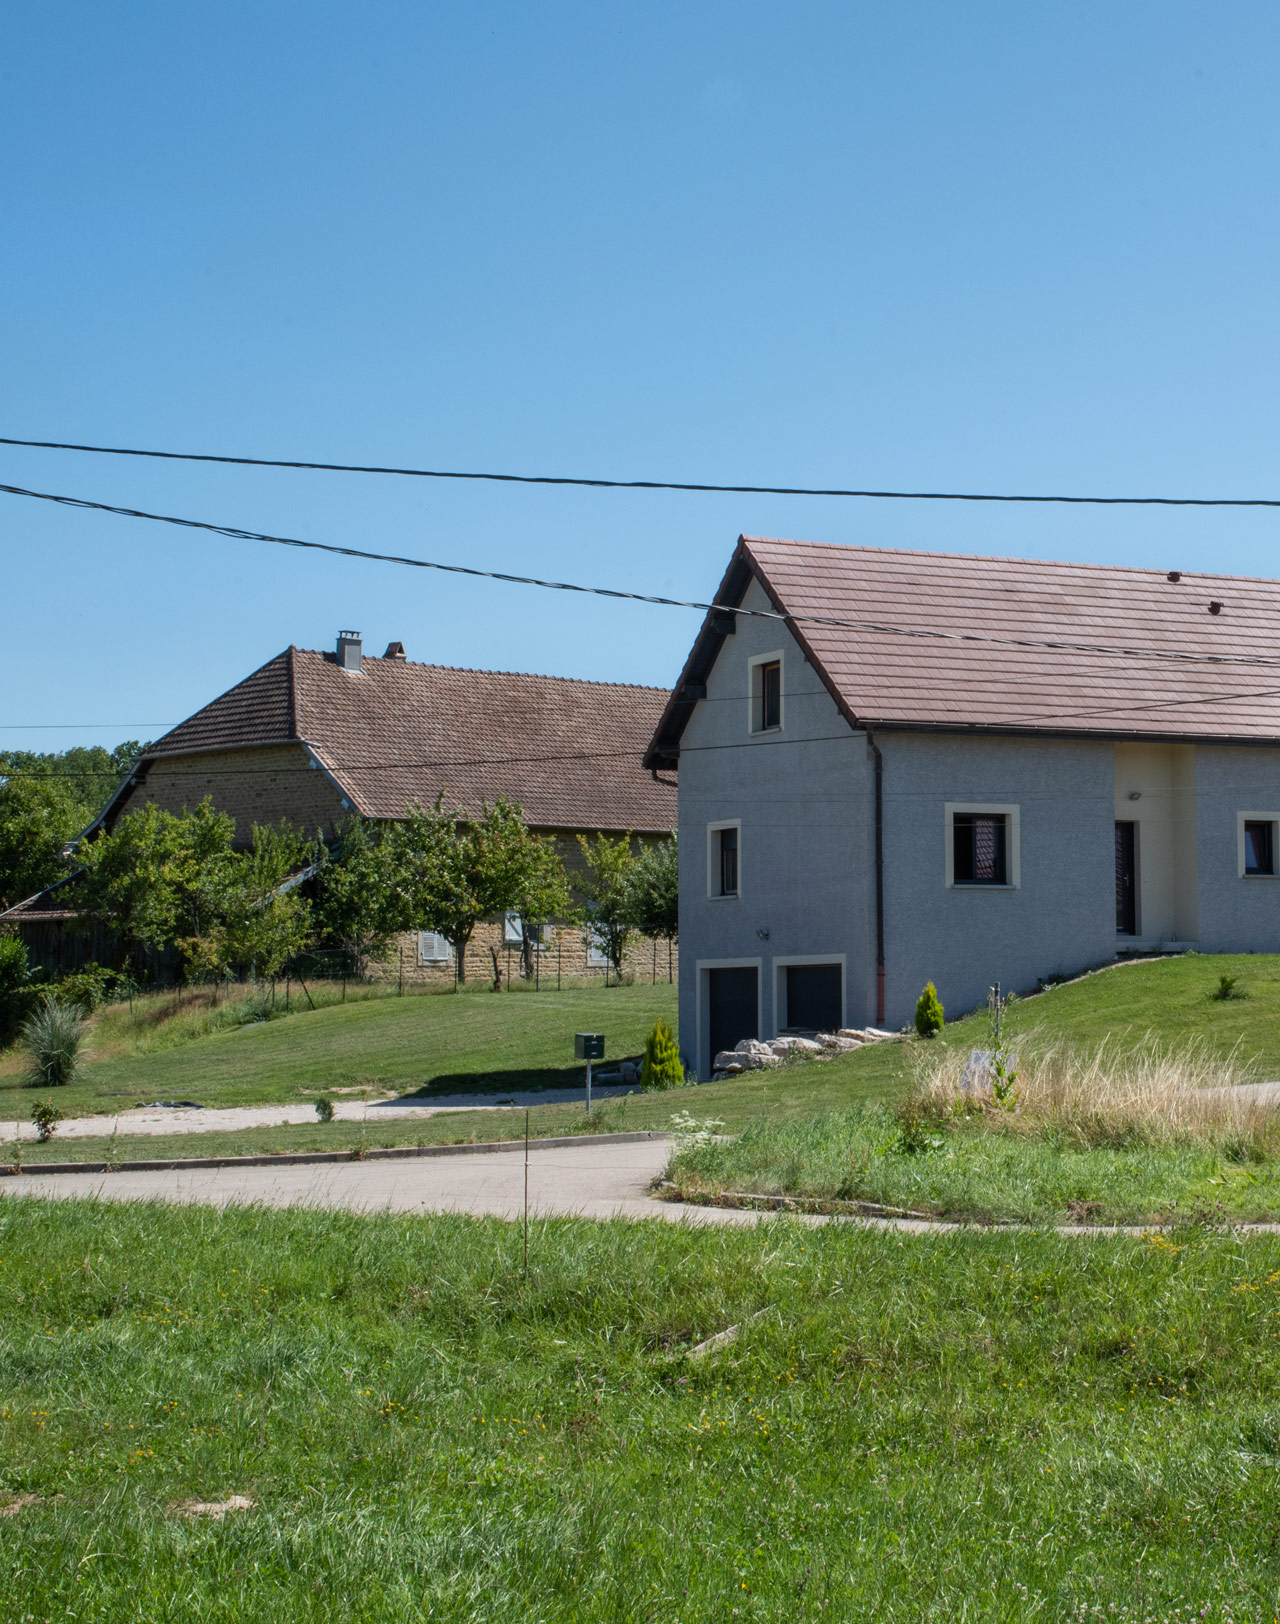 Des contrastes architecturaux forts entre fermes bressannes typiques et maisons plus contemporaines - Bresse des étangs - Vers-sous-Sellières